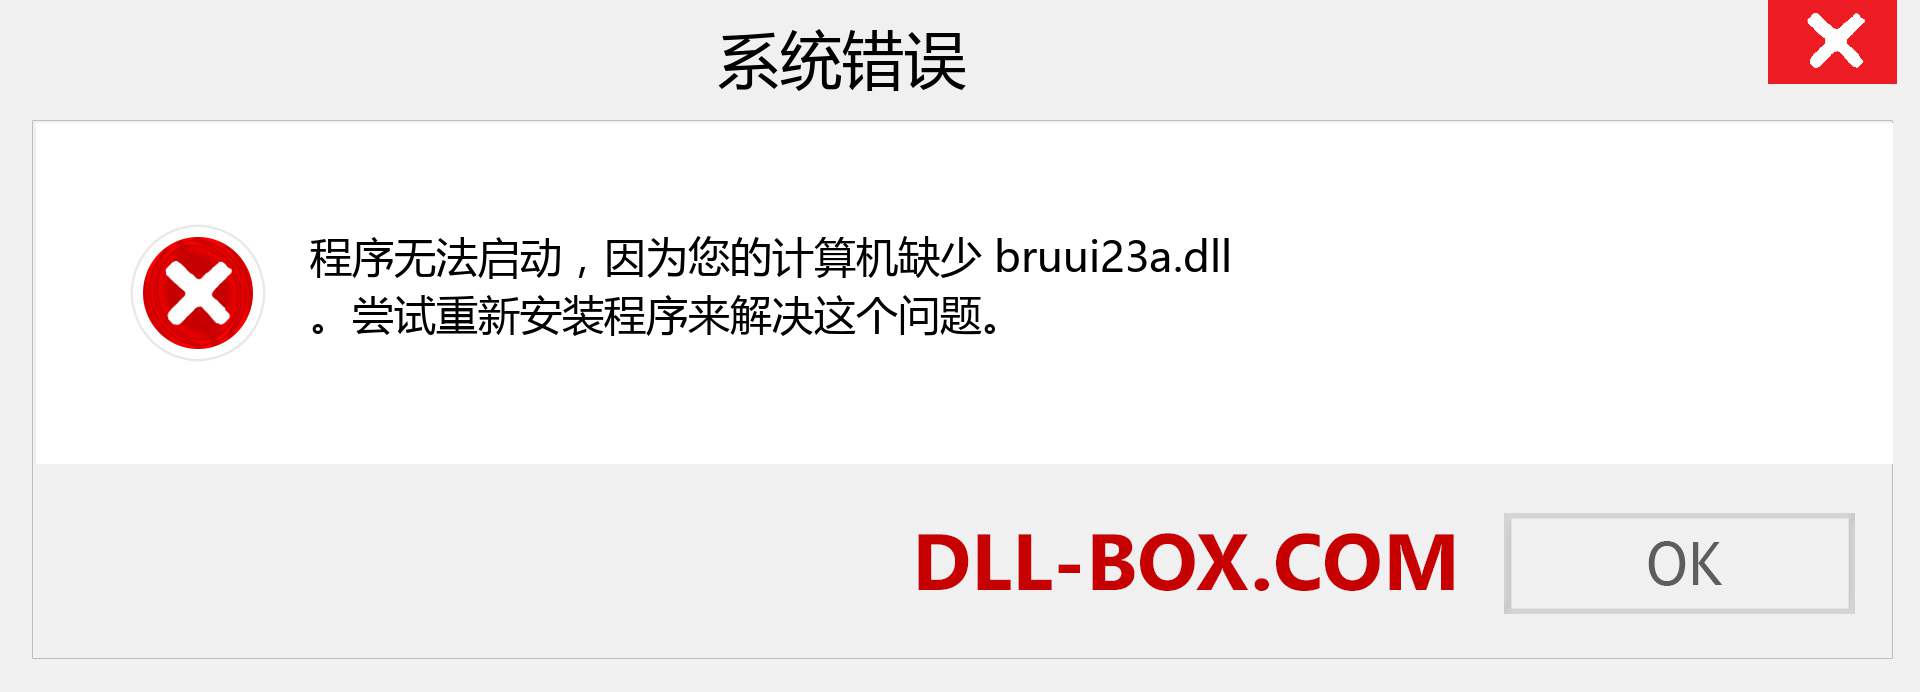 bruui23a.dll 文件丢失？。 适用于 Windows 7、8、10 的下载 - 修复 Windows、照片、图像上的 bruui23a dll 丢失错误